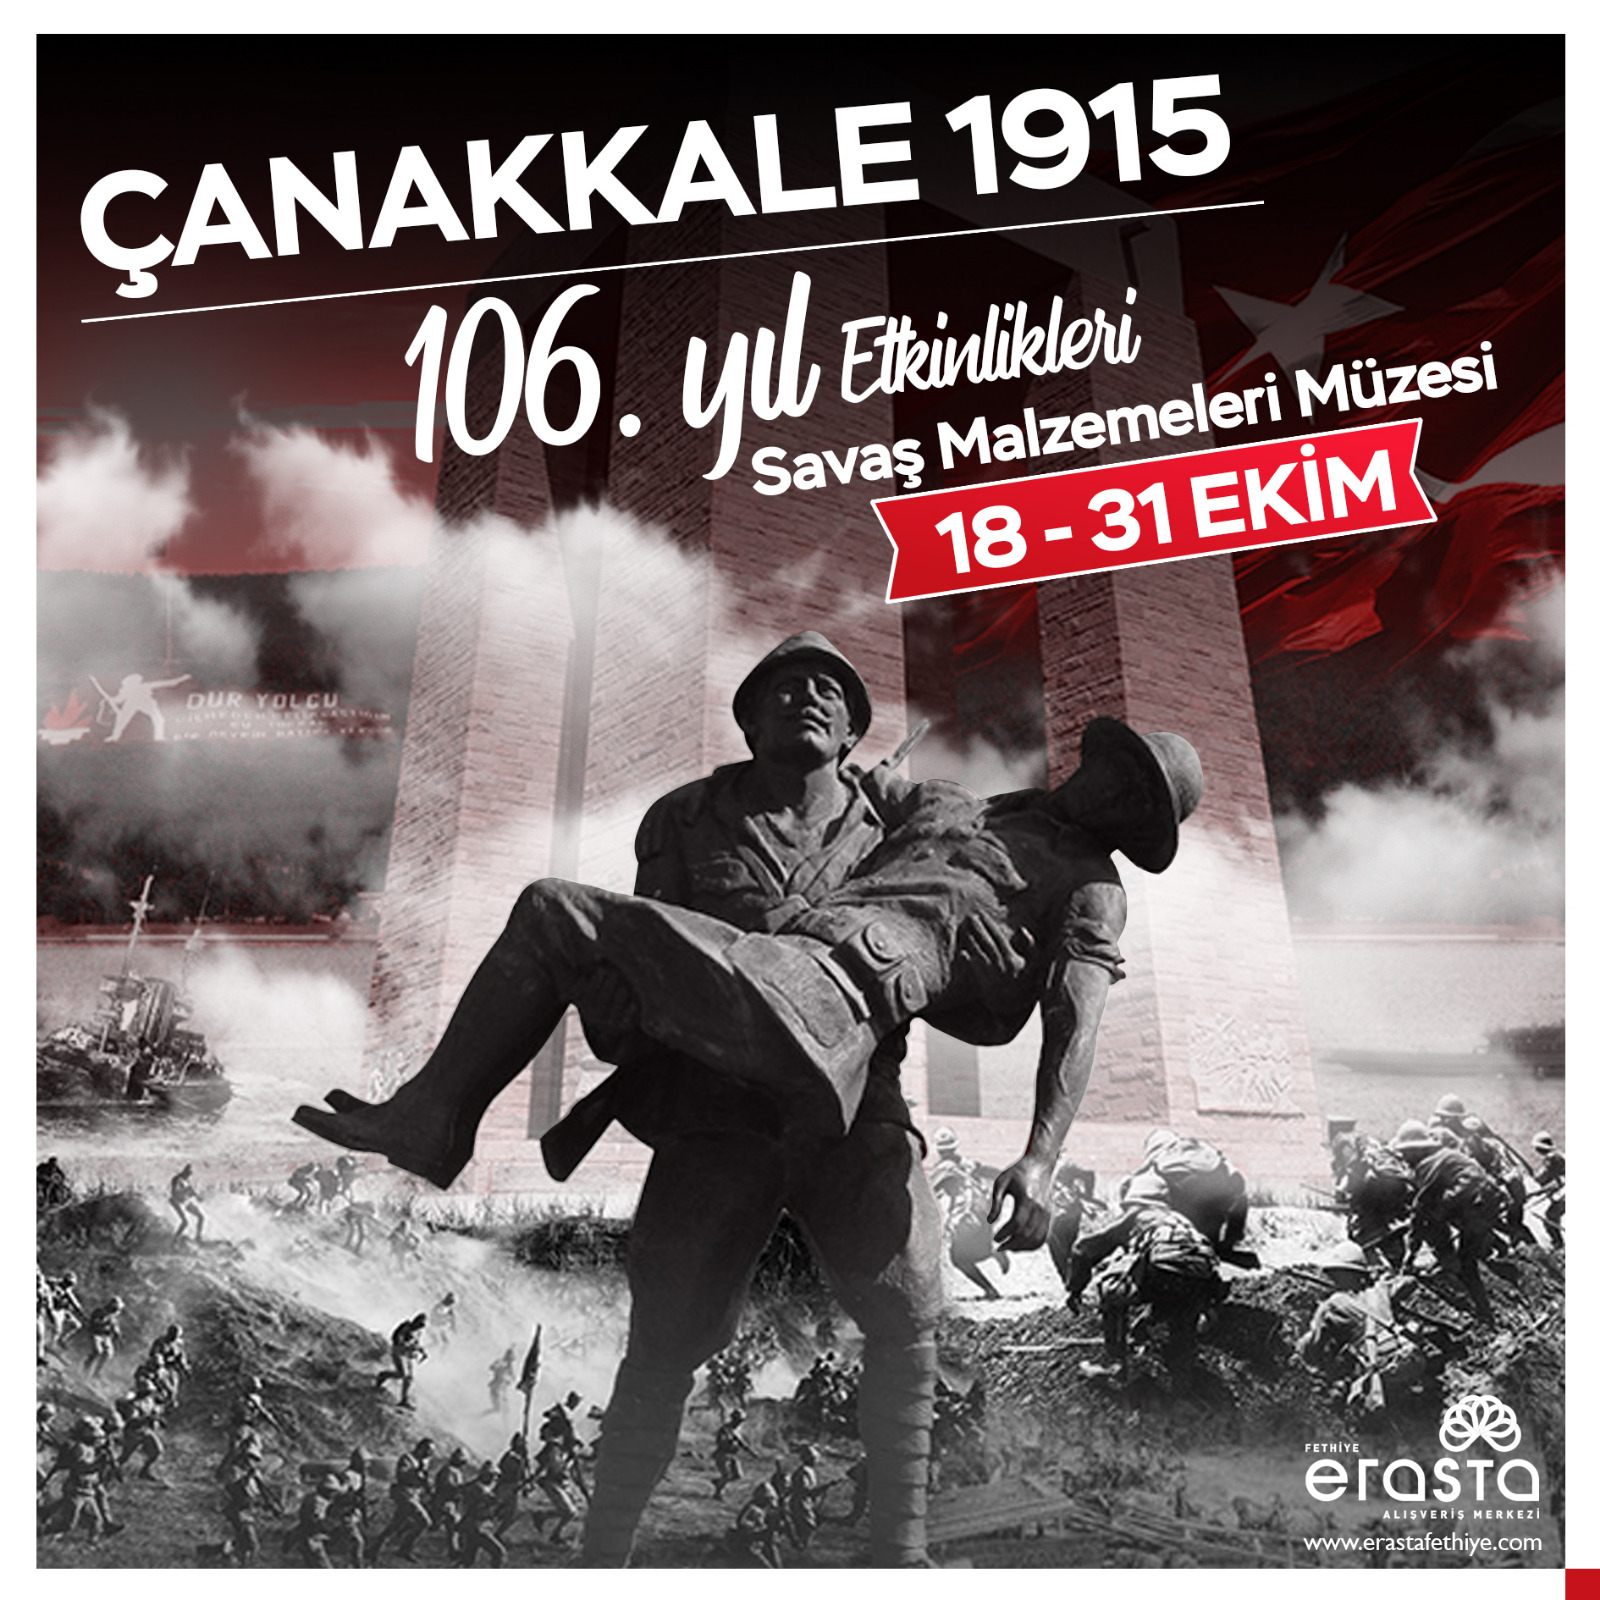 Çanakkale 1915 106. yıl Etkinlikleri